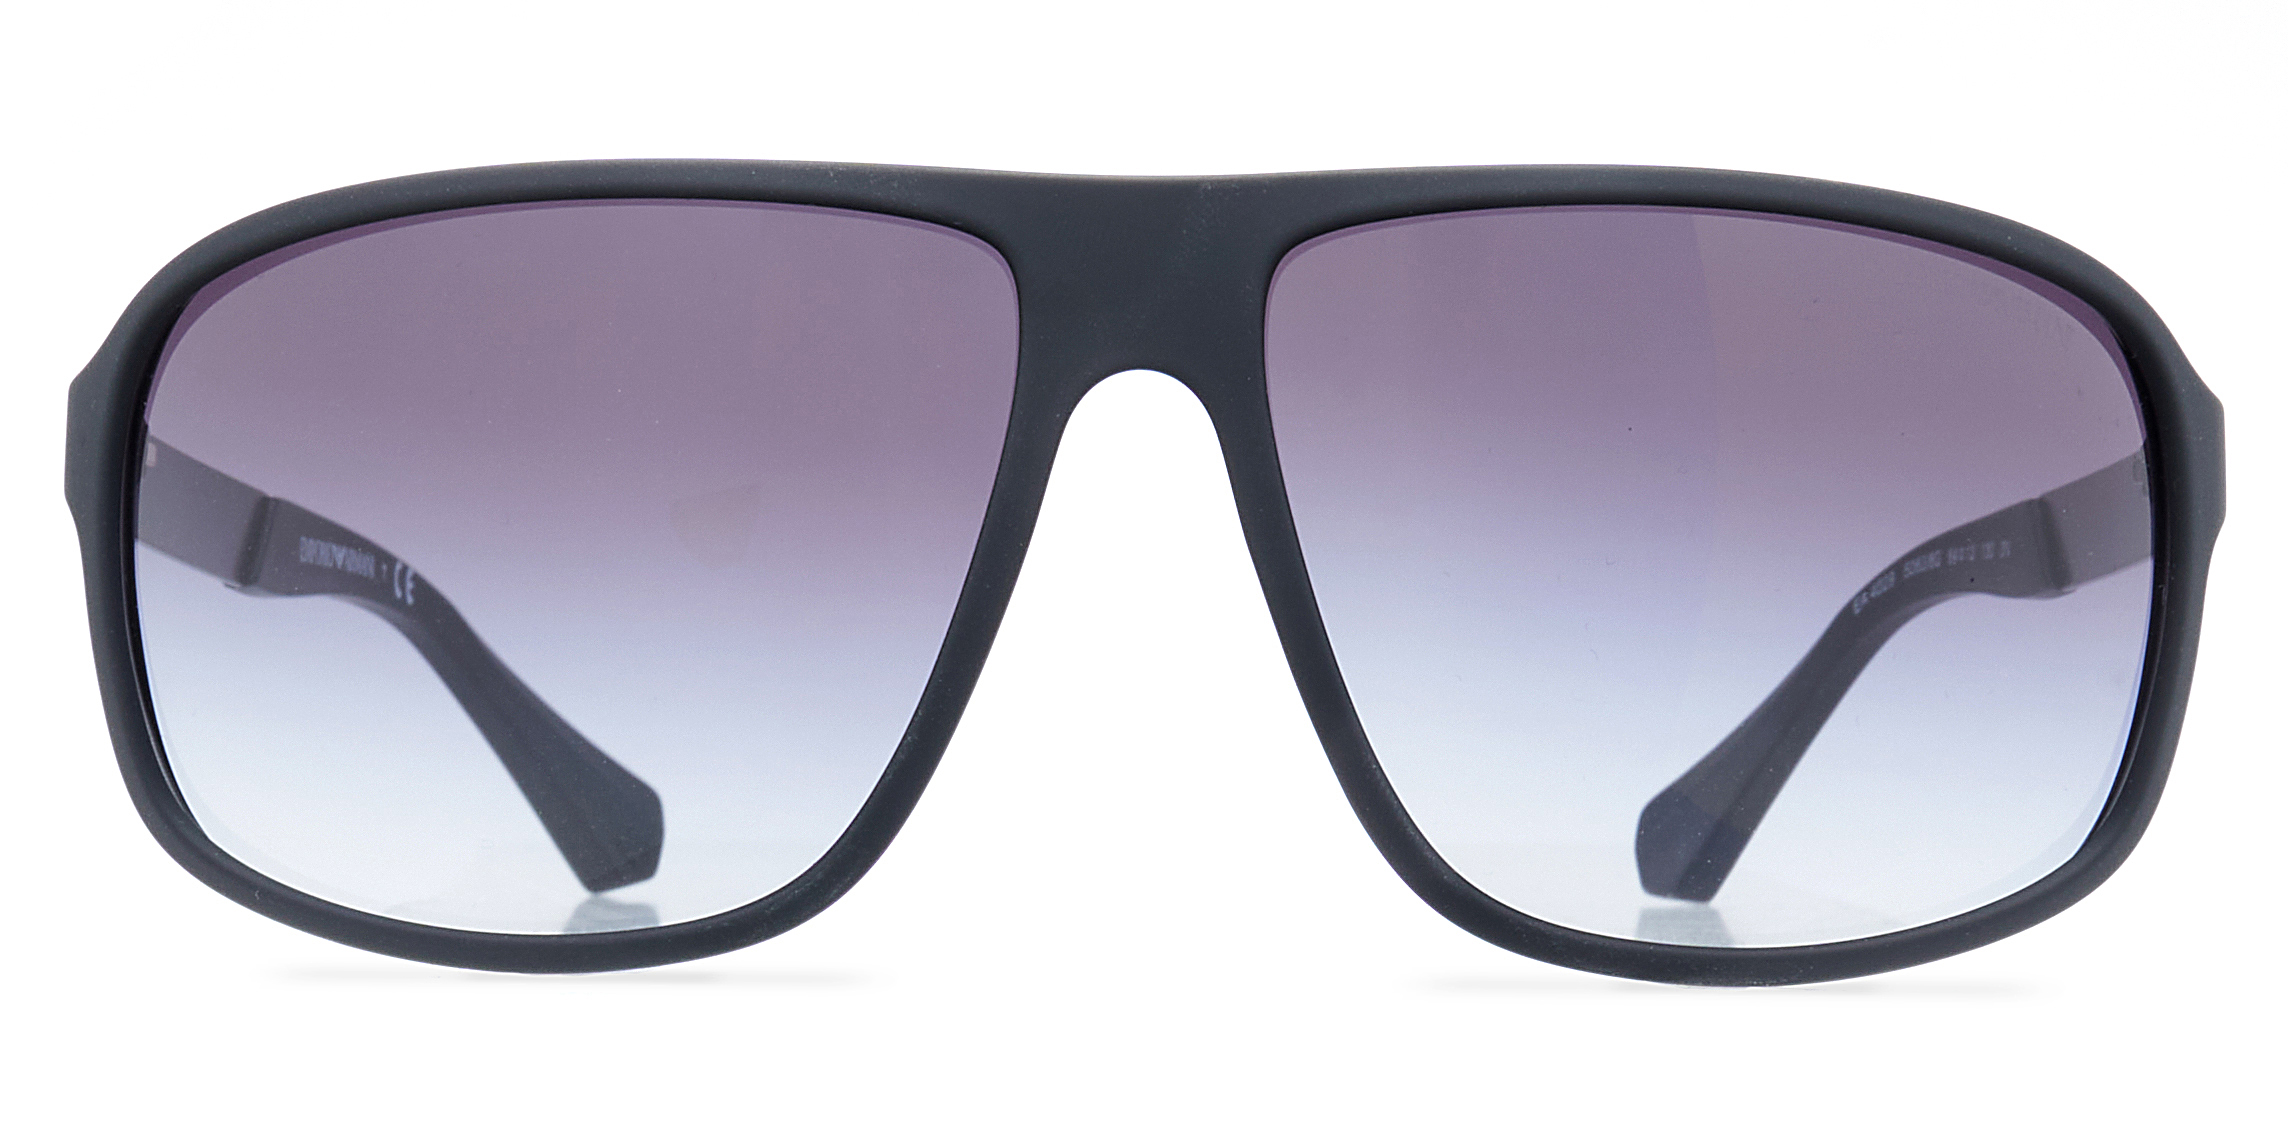 Emporio Armani Sunglasses EA4029 5063/8G 64